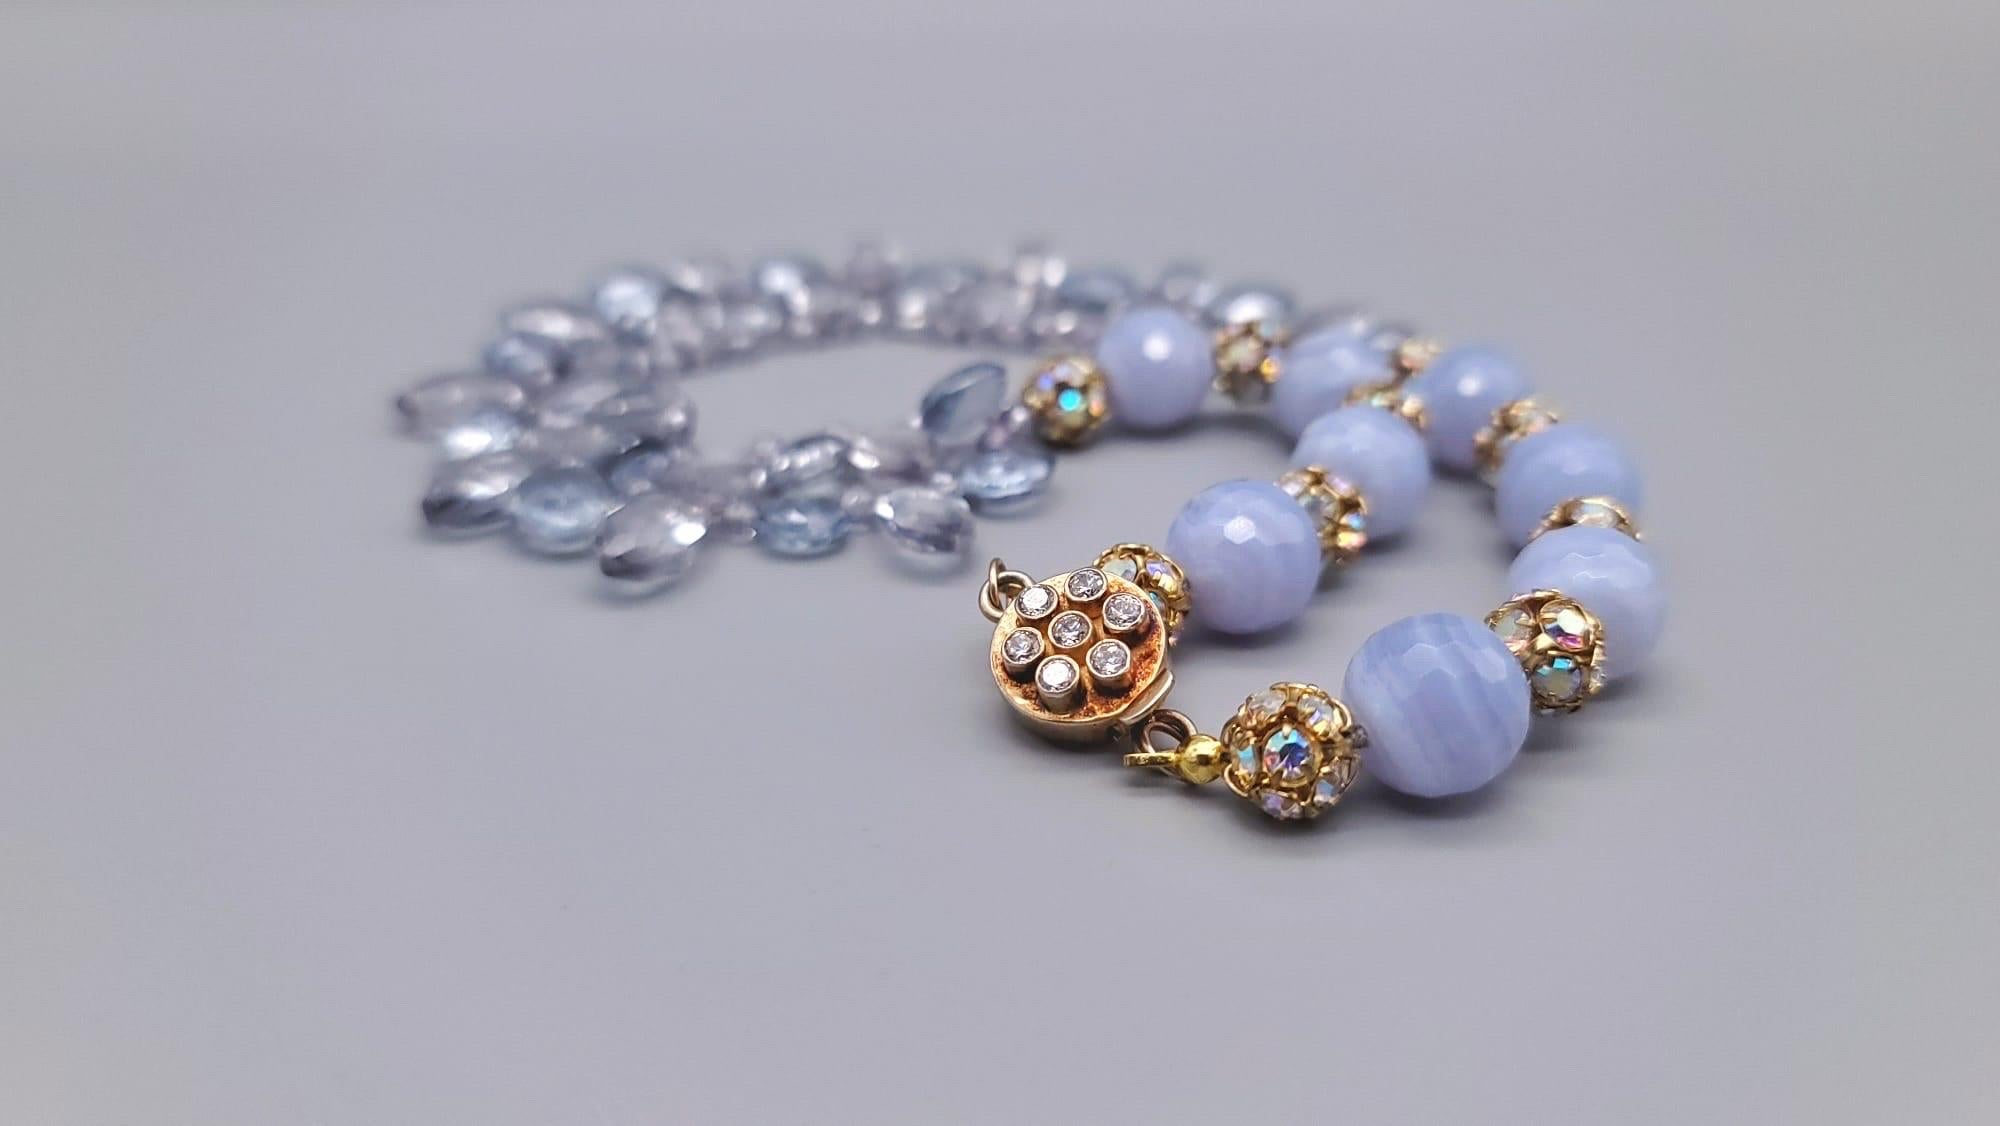 A.Jeschel Blue Quartz and Blue lace Agate Necklace. For Sale 5